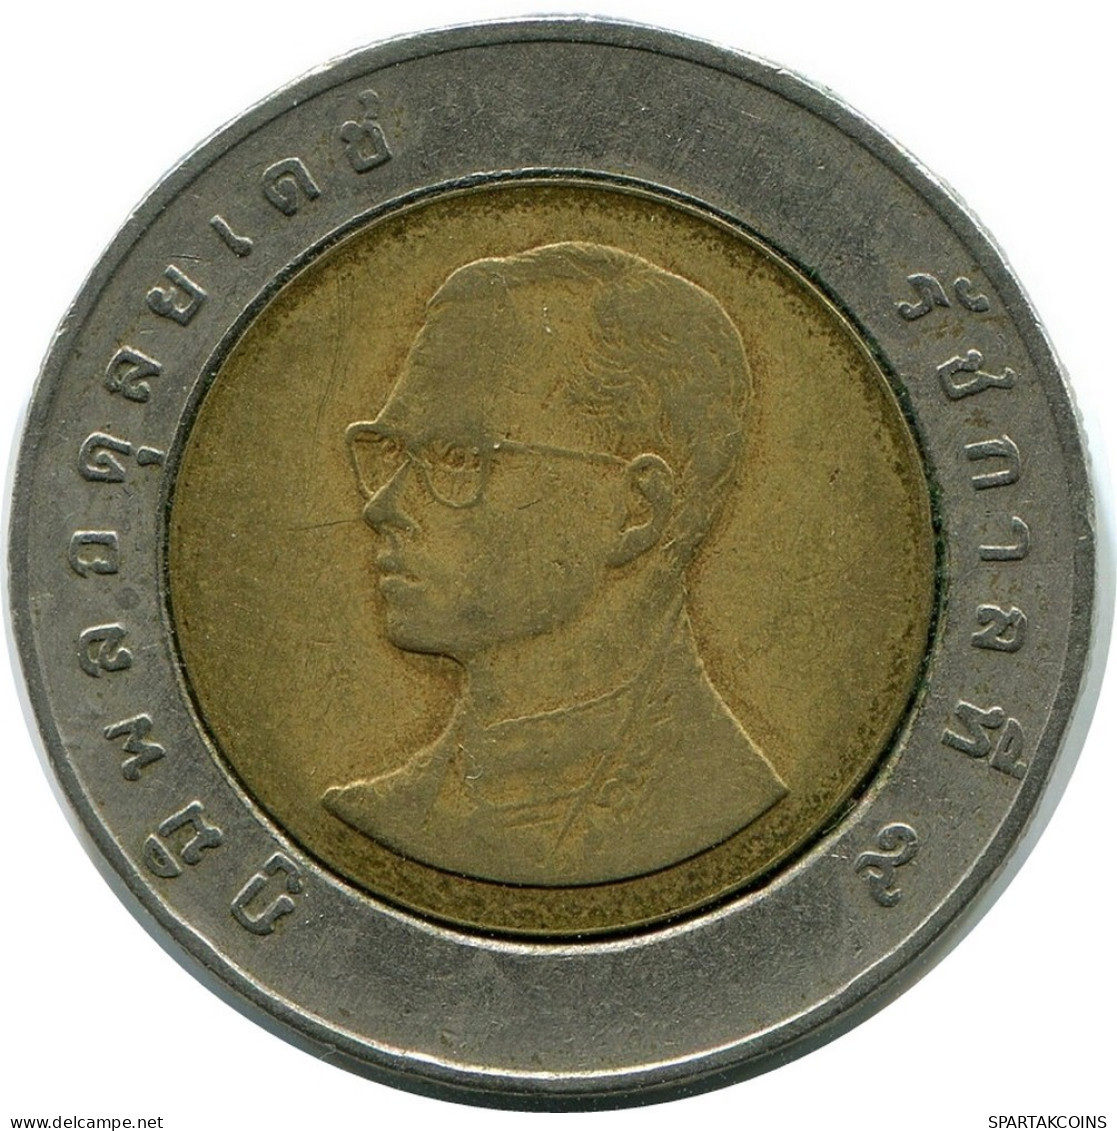 10 BAHT 2003 THAILAND BIMETALLIC Coin #AR214.U.A - Thaïlande